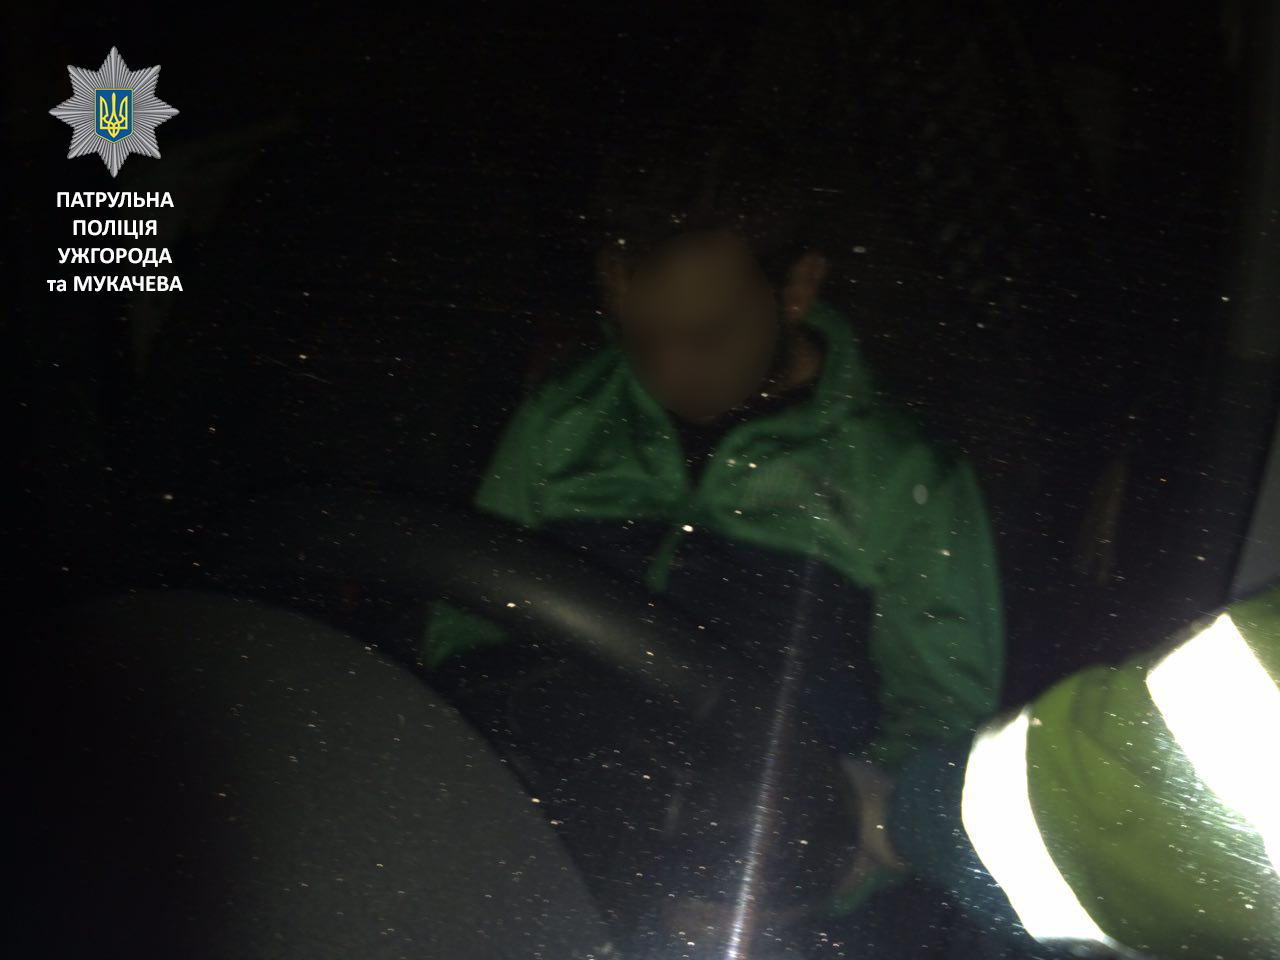 У Мукачеві поліцейські виявили в припаркованому авто водія під дією наркотиків (ФОТО, ВІДЕО)